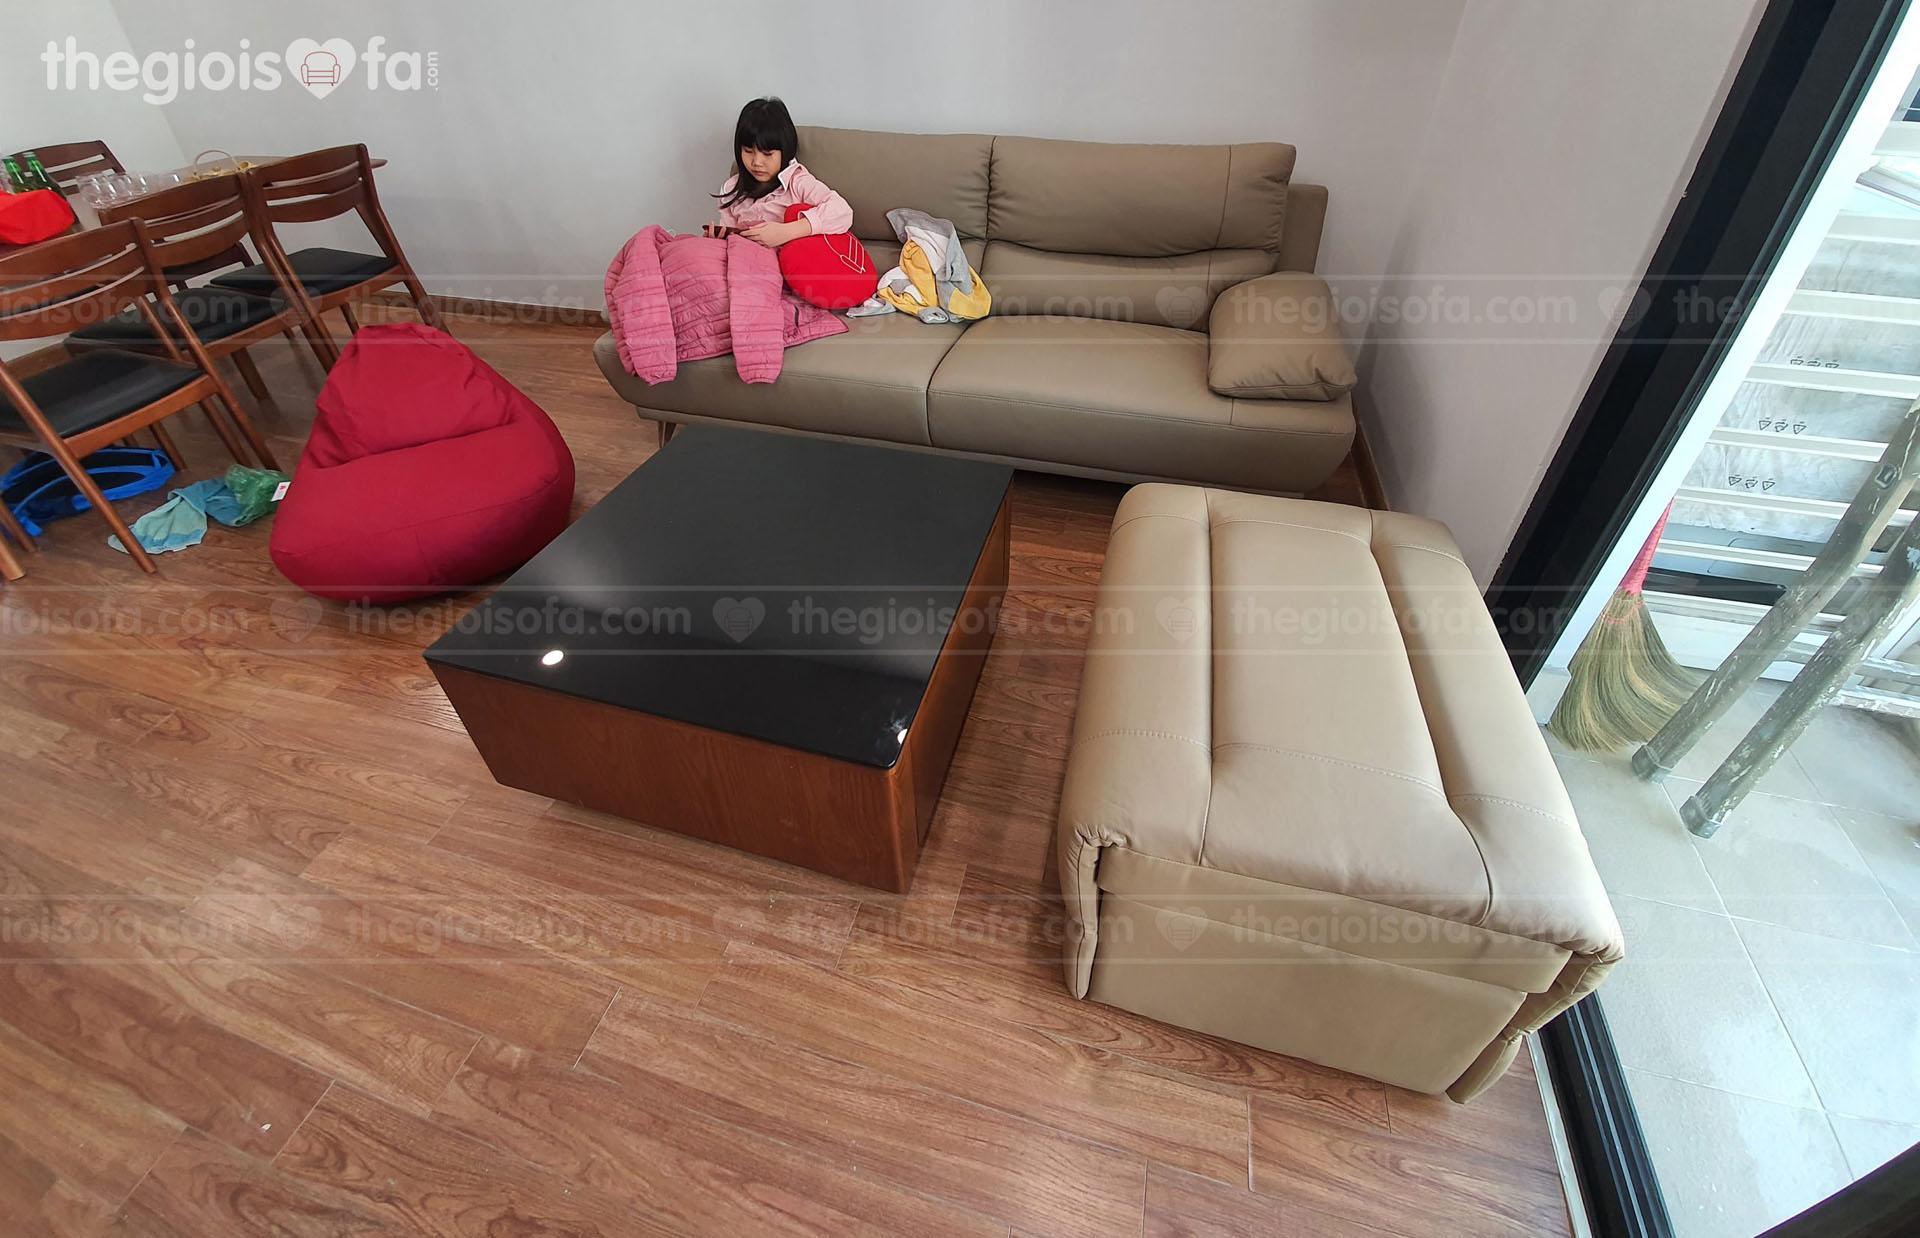 Giao hàng sofa Malaysia Omega KH 222 cho anh Ngũ ở Times City – Hai Bà Trưng – Hà Nội